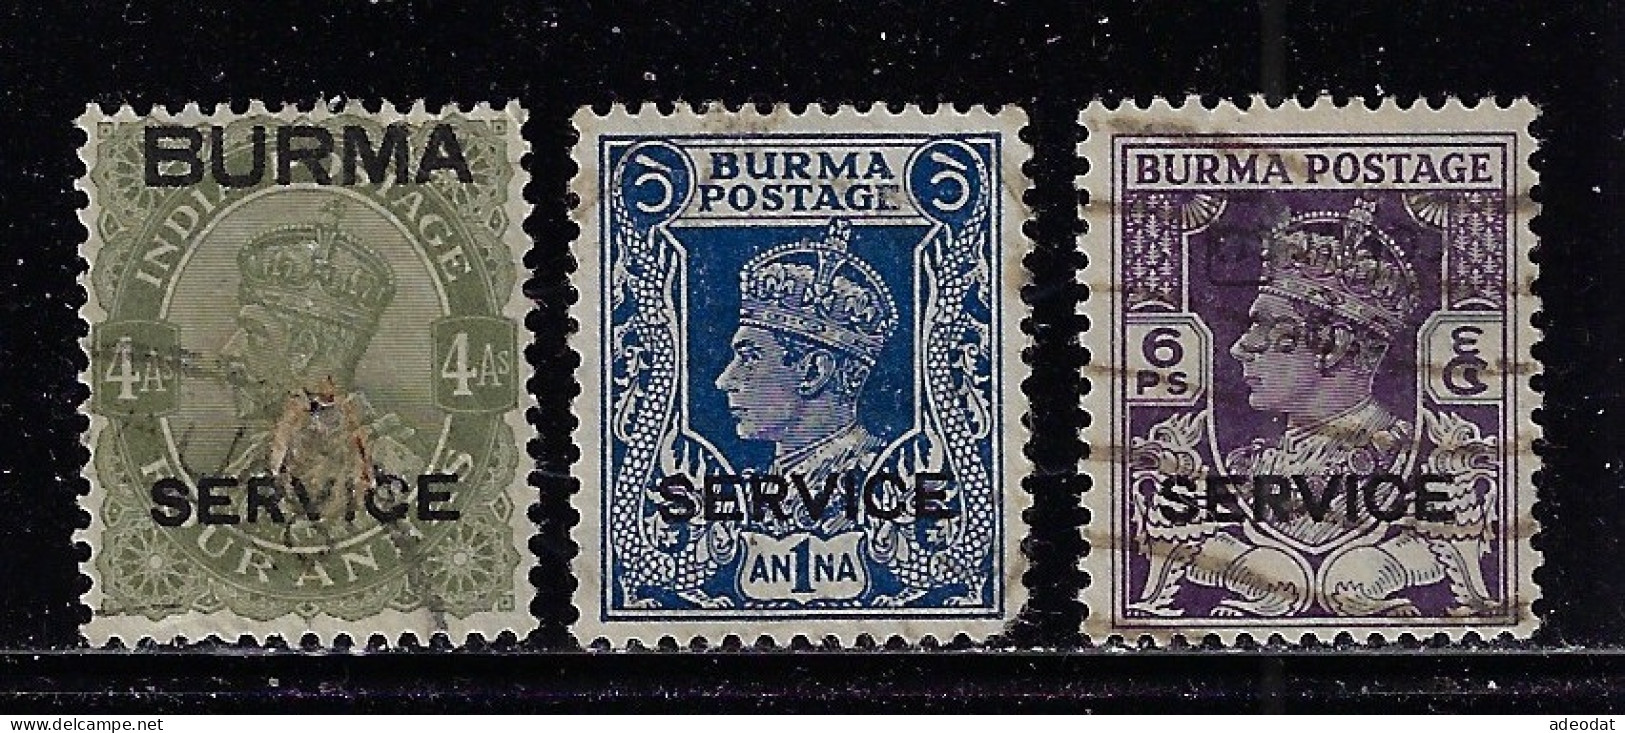 BURMA 1937 SERVICE SCOTT #07,44,46 USED - Burma (...-1947)